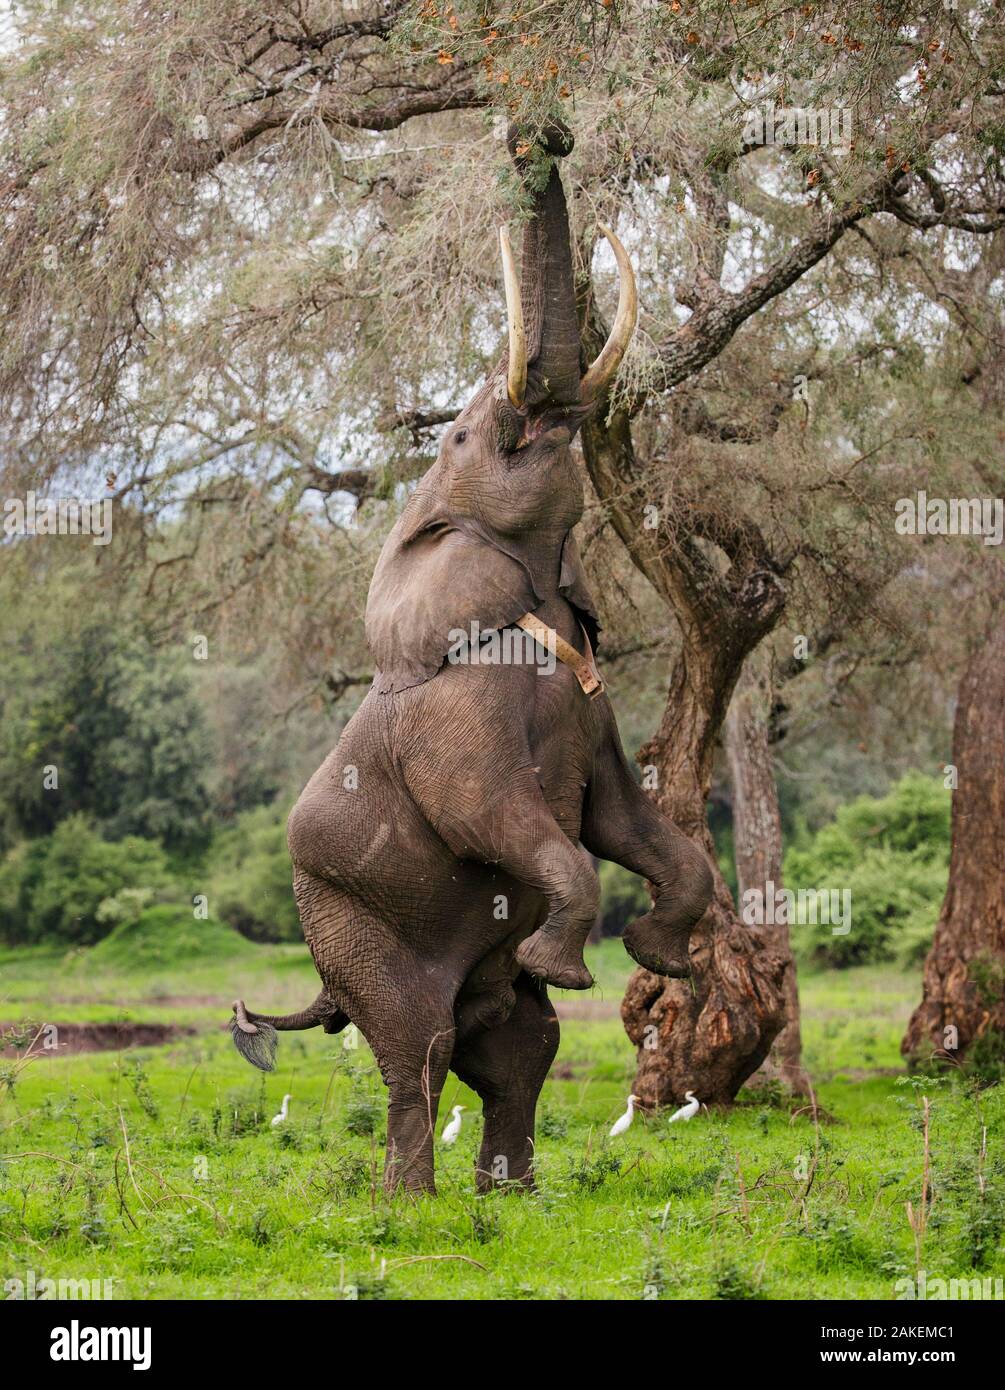 Elephant (Loxodonta africana), homme debout sur ses pattes pour atteindre les gousses d'acacia avec garde-boeufs (Bubulcus ibis) en arrière-plan. Mana Pools National Park, Zimbabwe. Banque D'Images